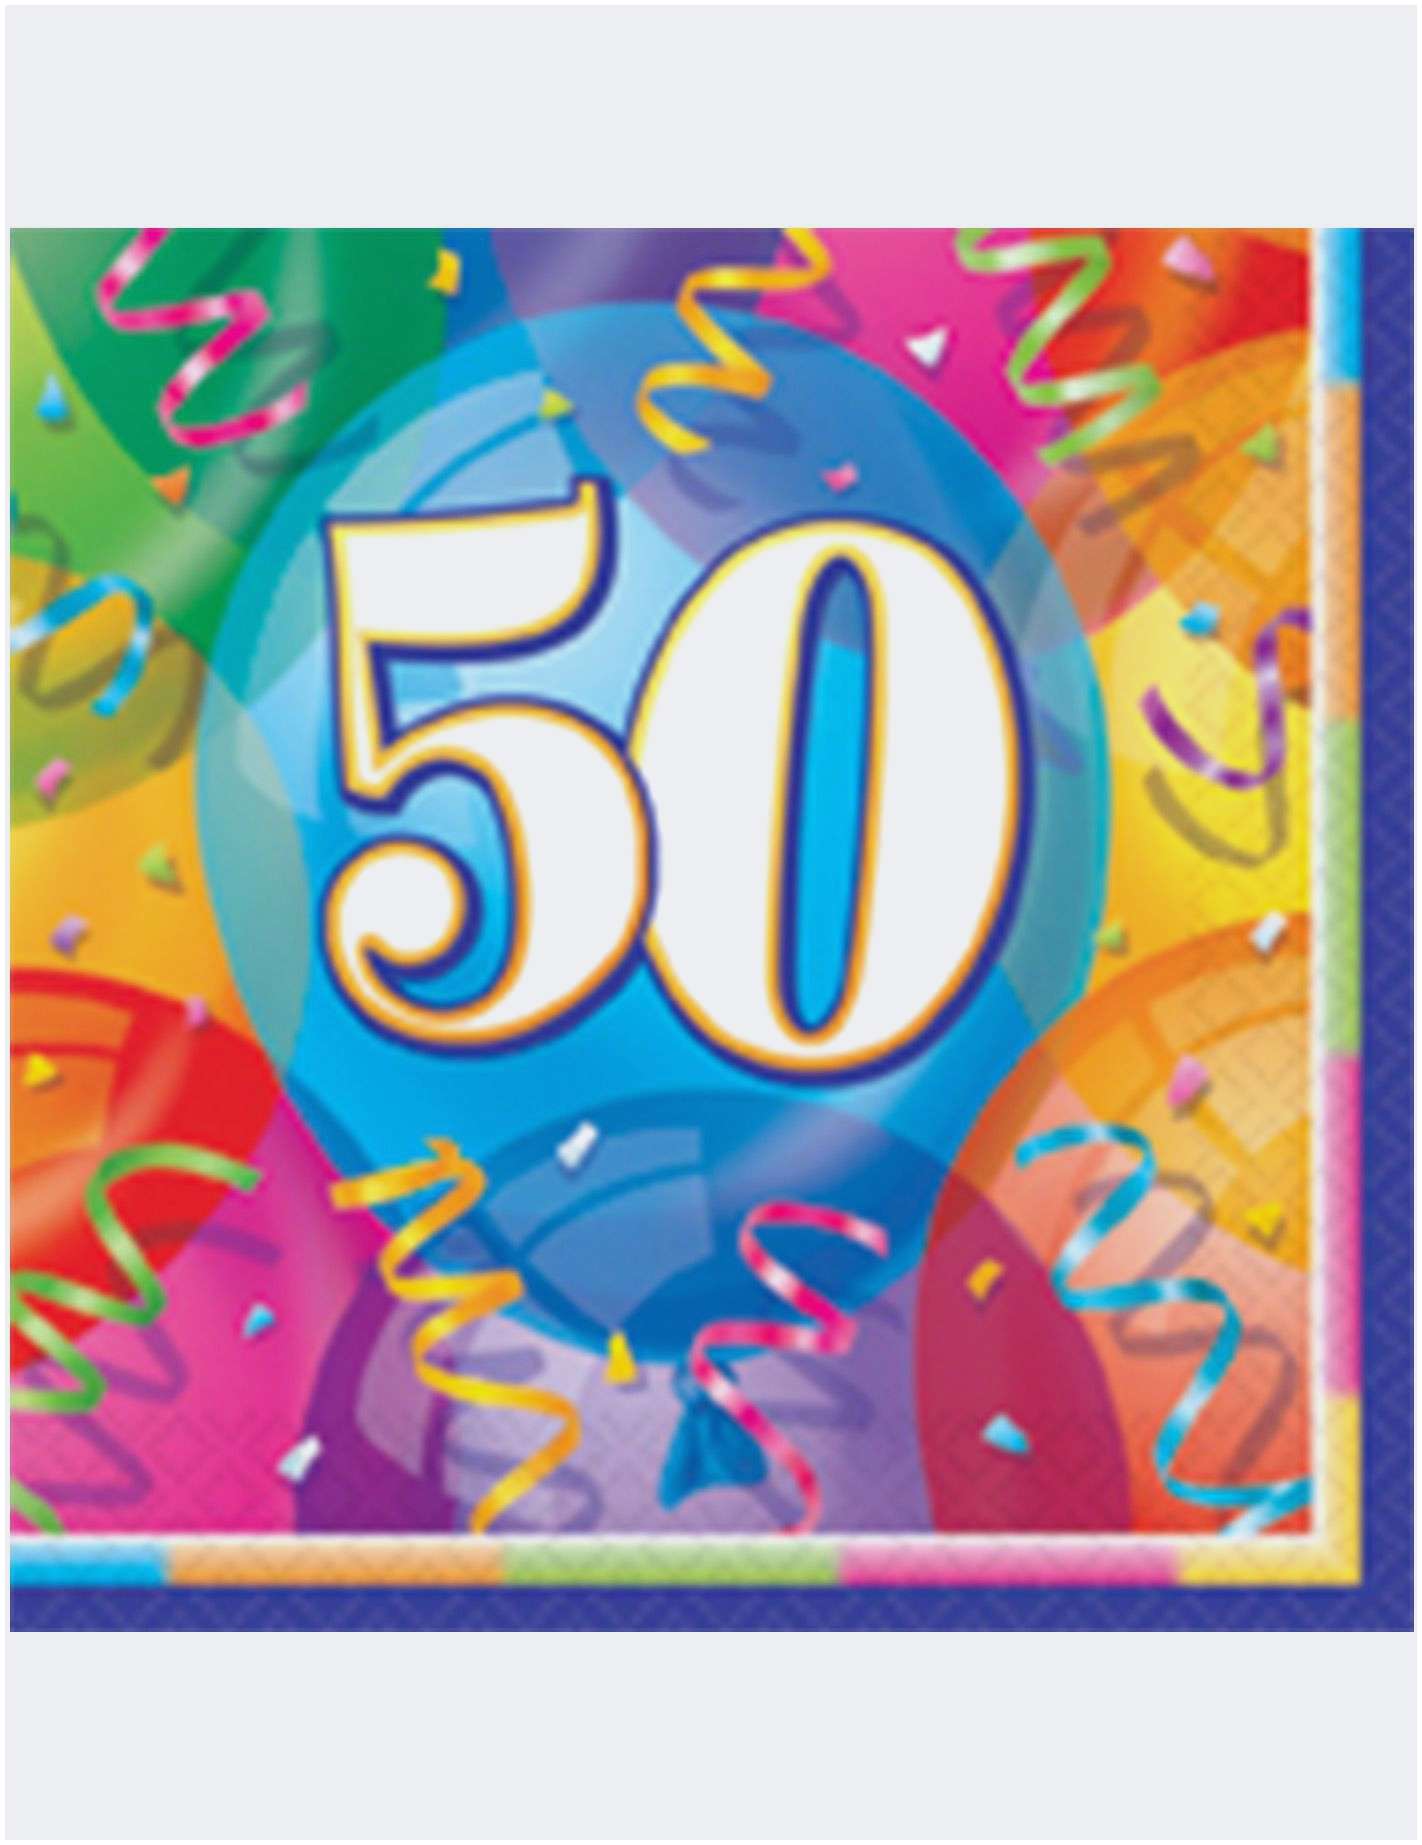 Carte anniversaire imprimer 50 ans femme